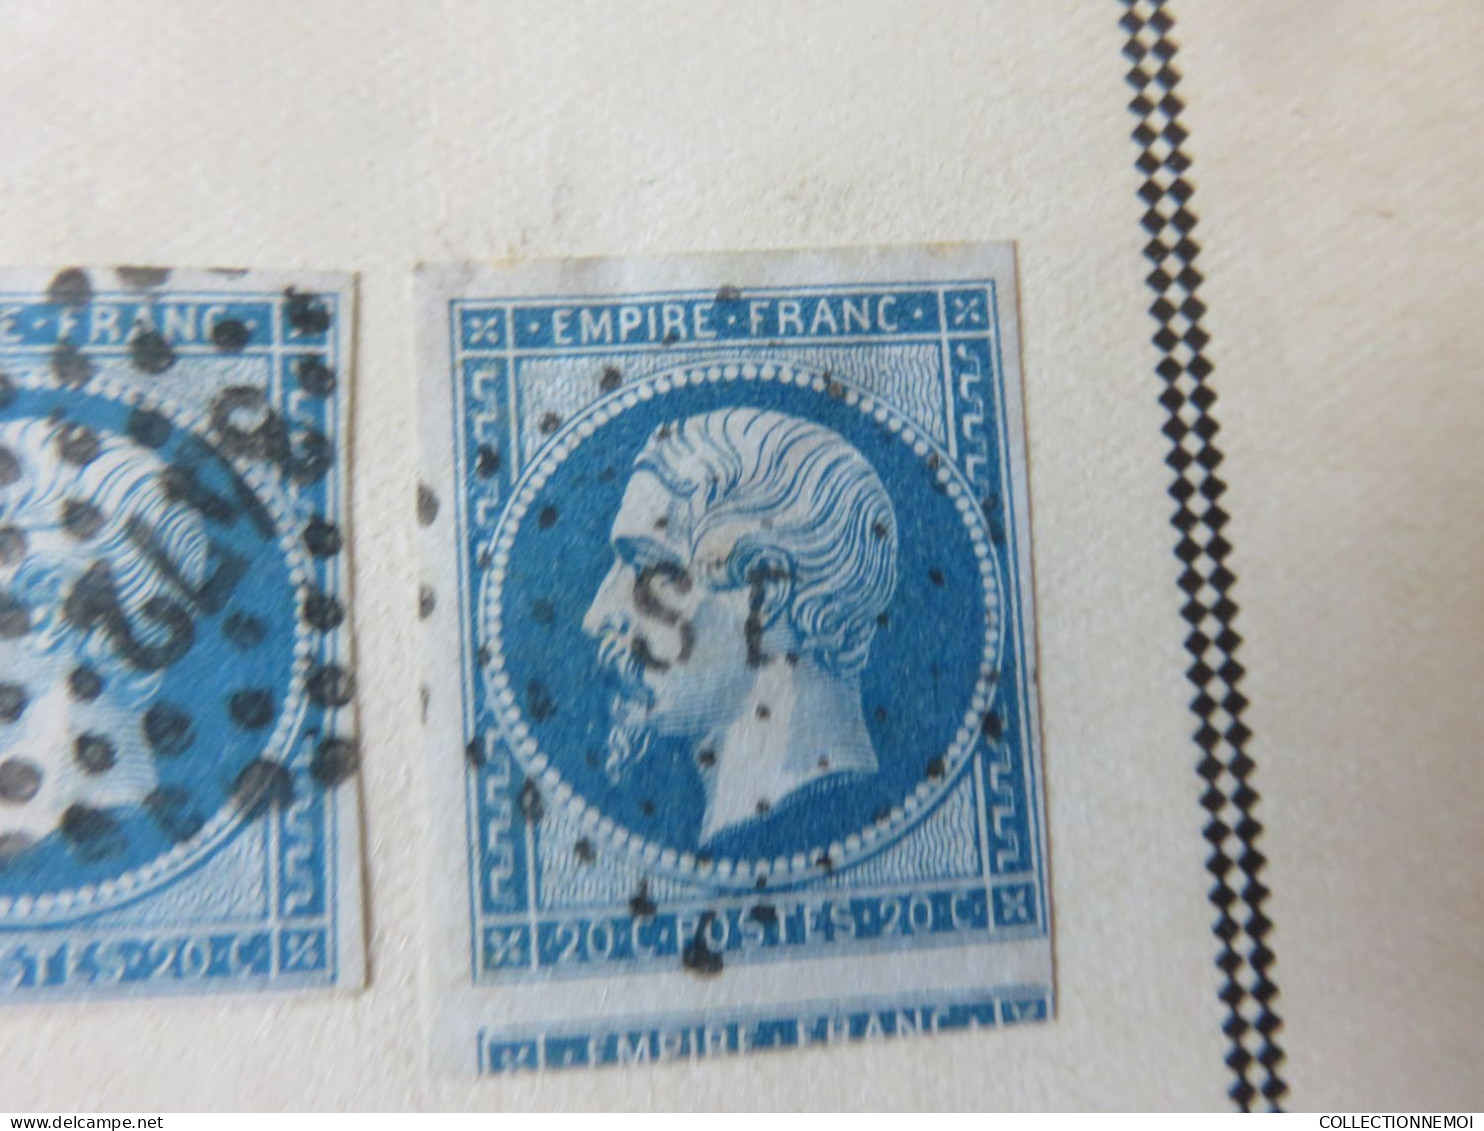 FRANCE CLASSIQUES,,,beaucoup plus +++++++++ de 400 timbres avant 1900